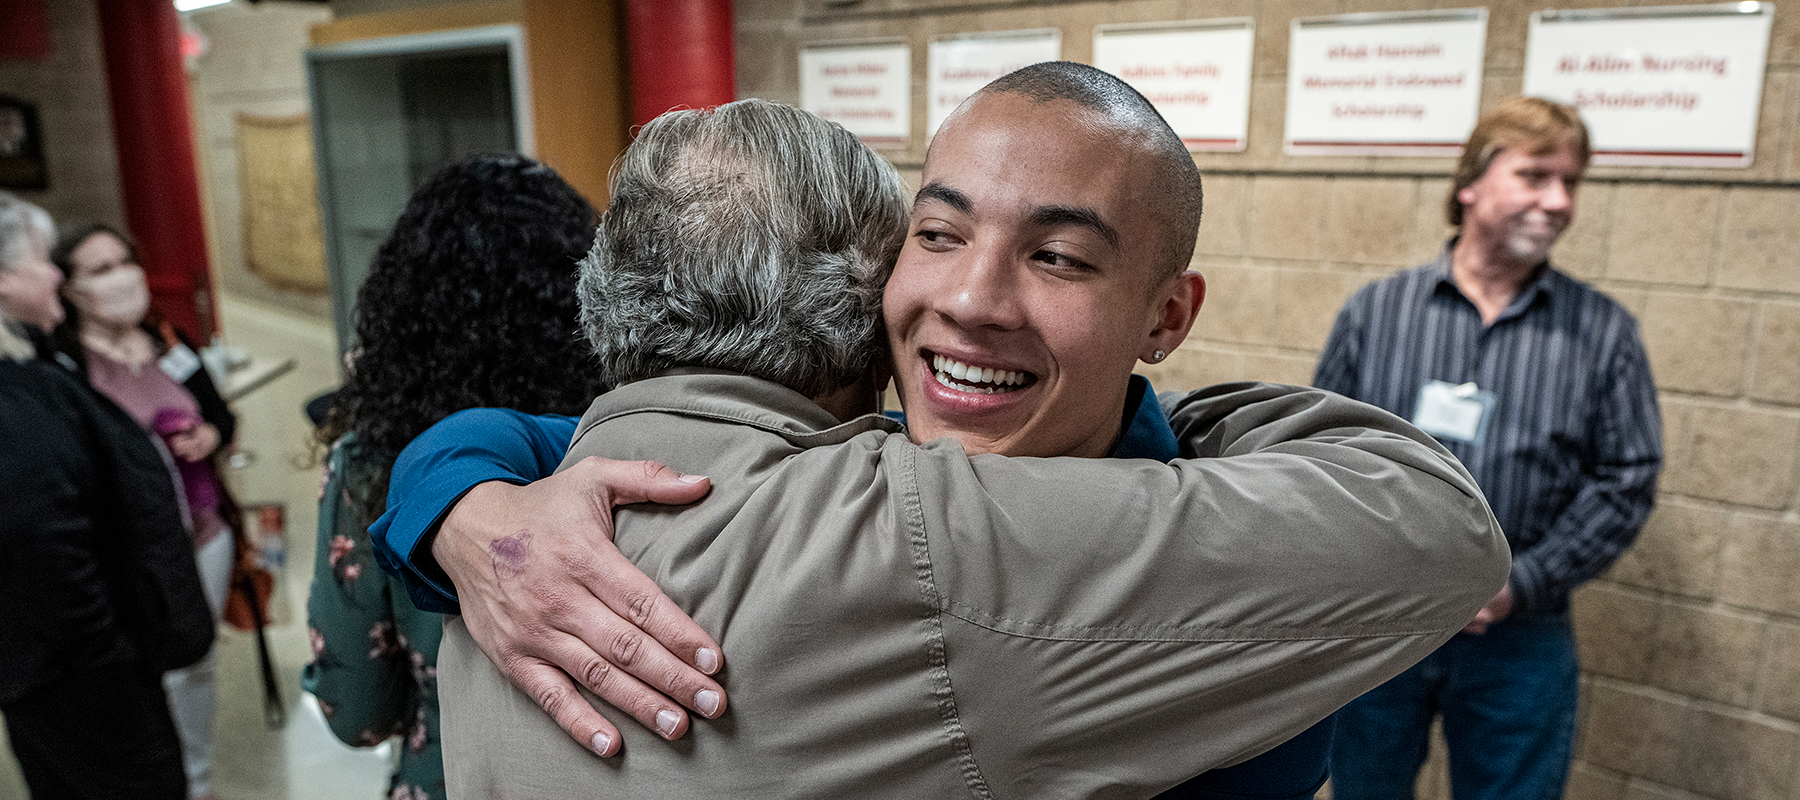 Scholarship recipient Pedro gives a donor a hug